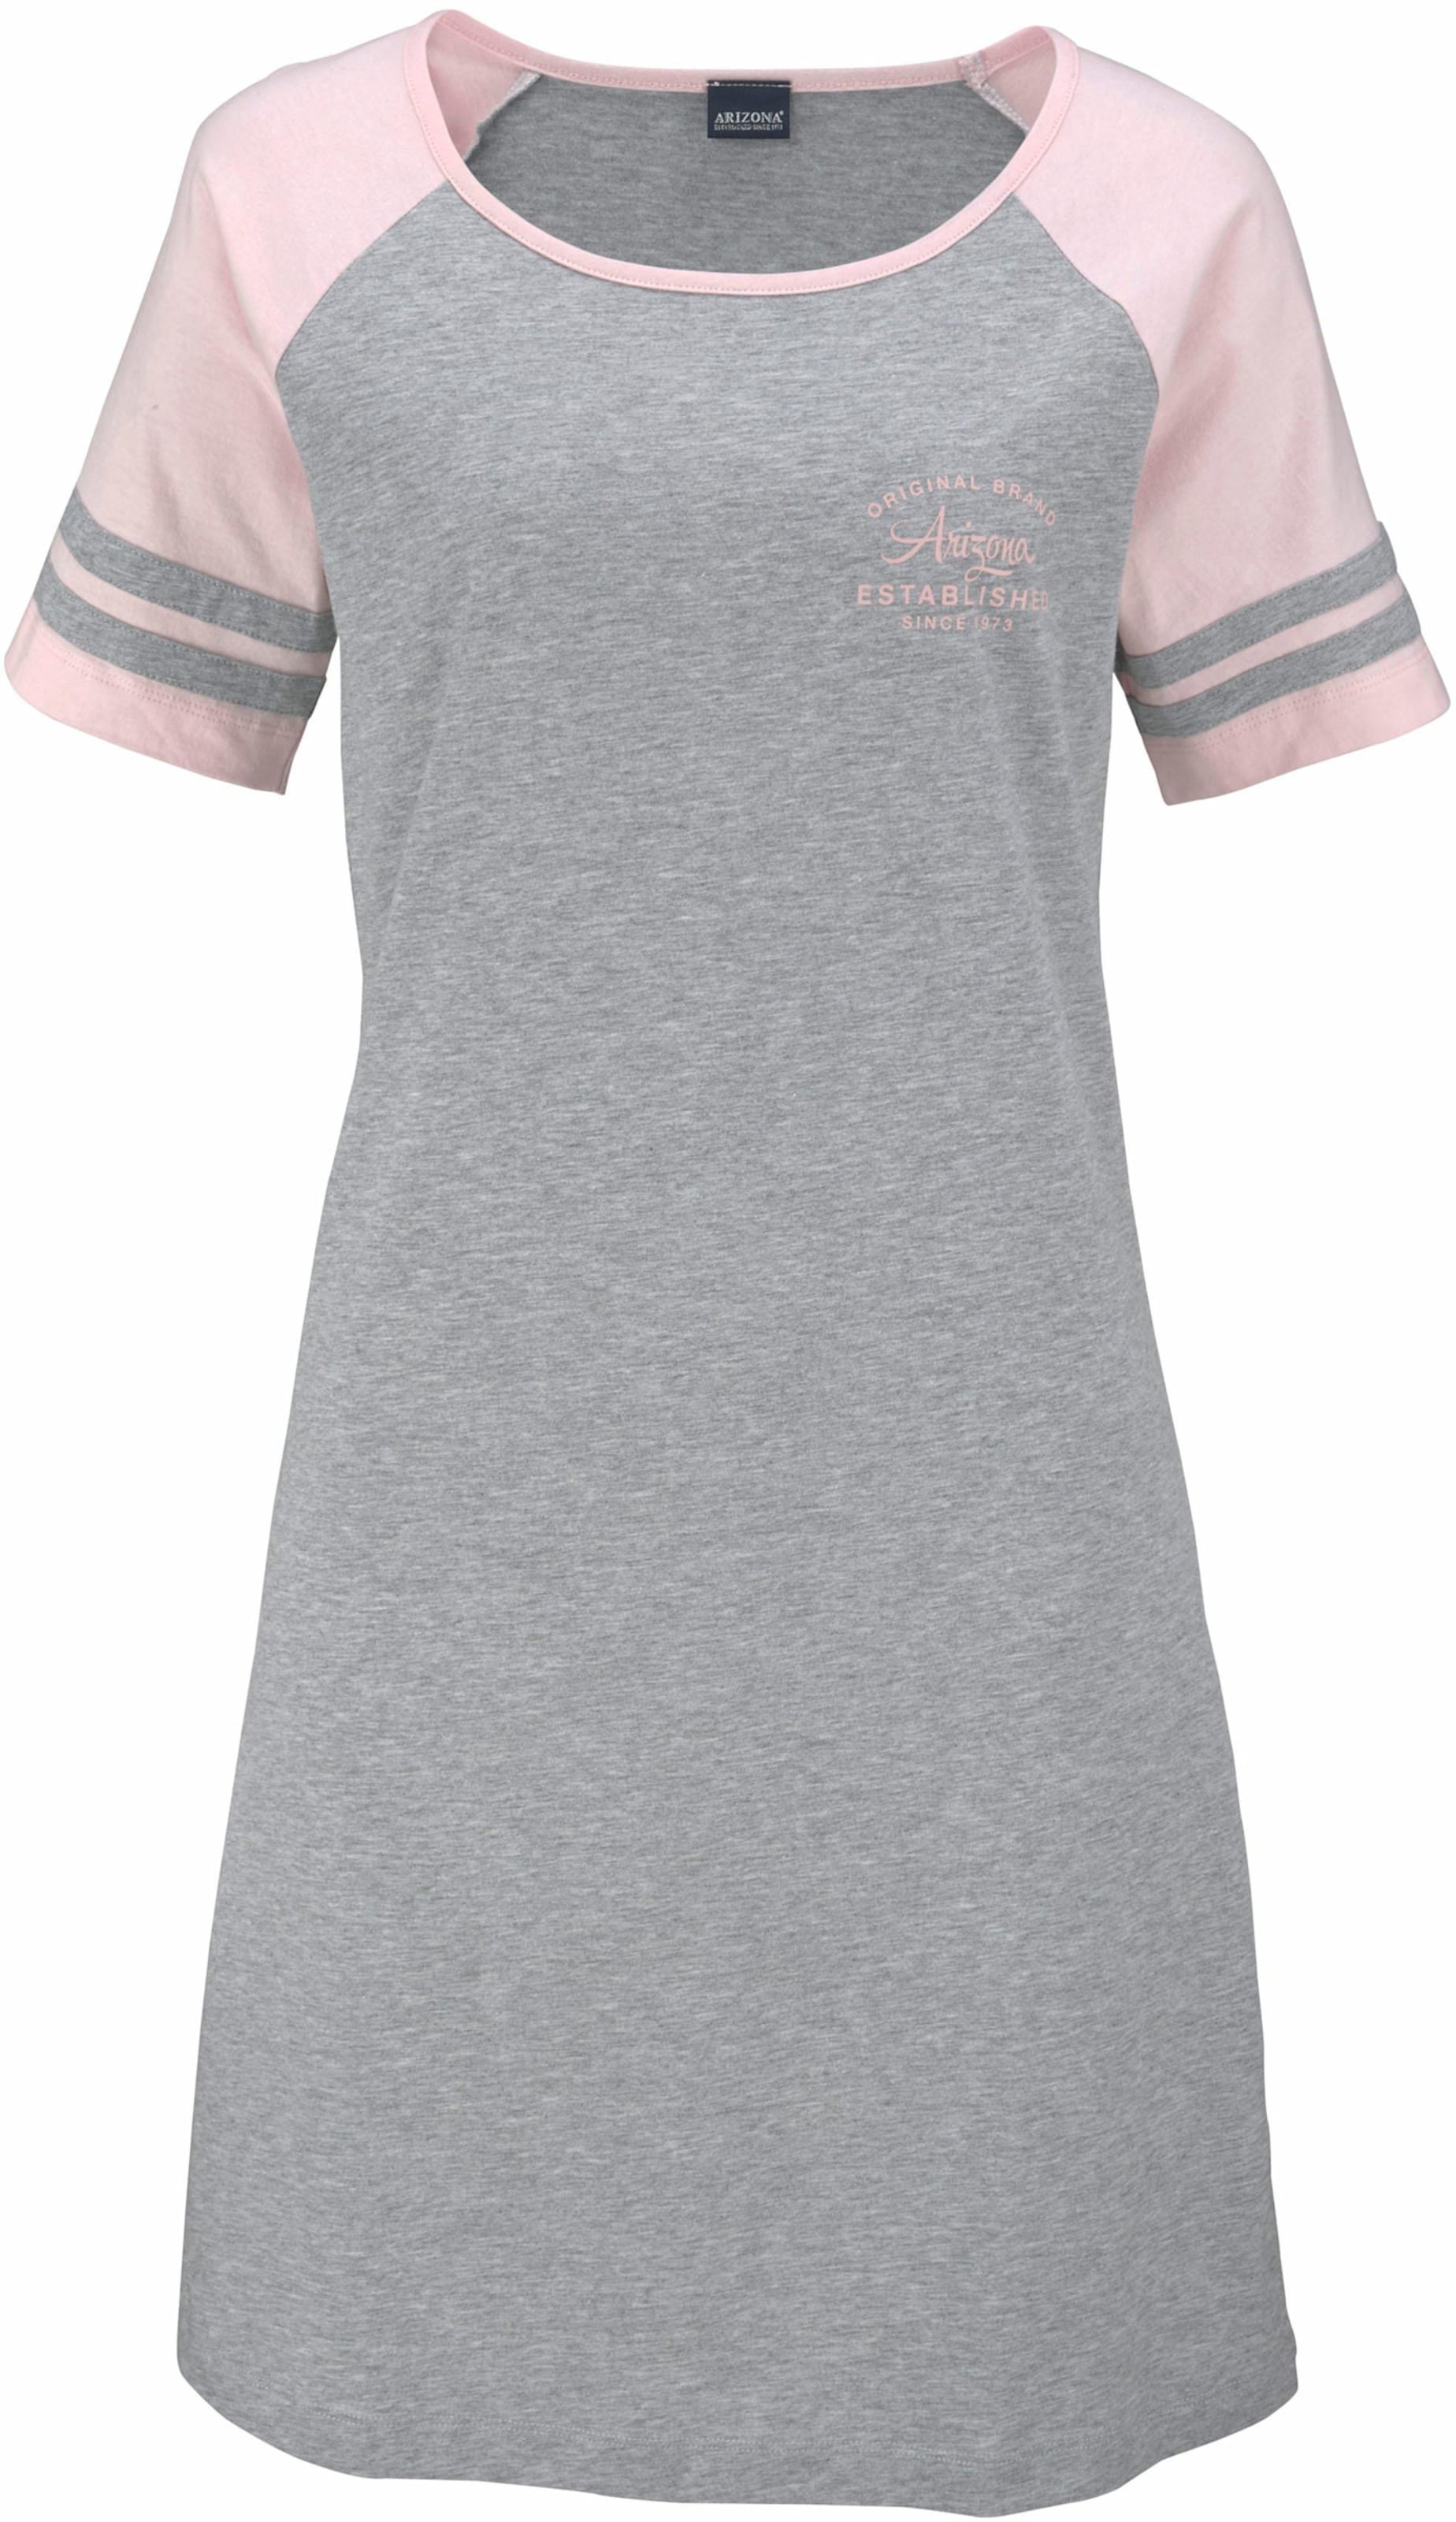 The Sport günstig Kaufen-Nachthemd in grau-rosa von Arizona. Nachthemd in grau-rosa von Arizona <![CDATA[Arizona Nachthemd mit sportlichen Streifen an den Raglan Ärmeln. Gefertigt aus einer angenehmen und bequemen Single-Jersey Qualität. Aus 100% Baumwolle.]]>. 